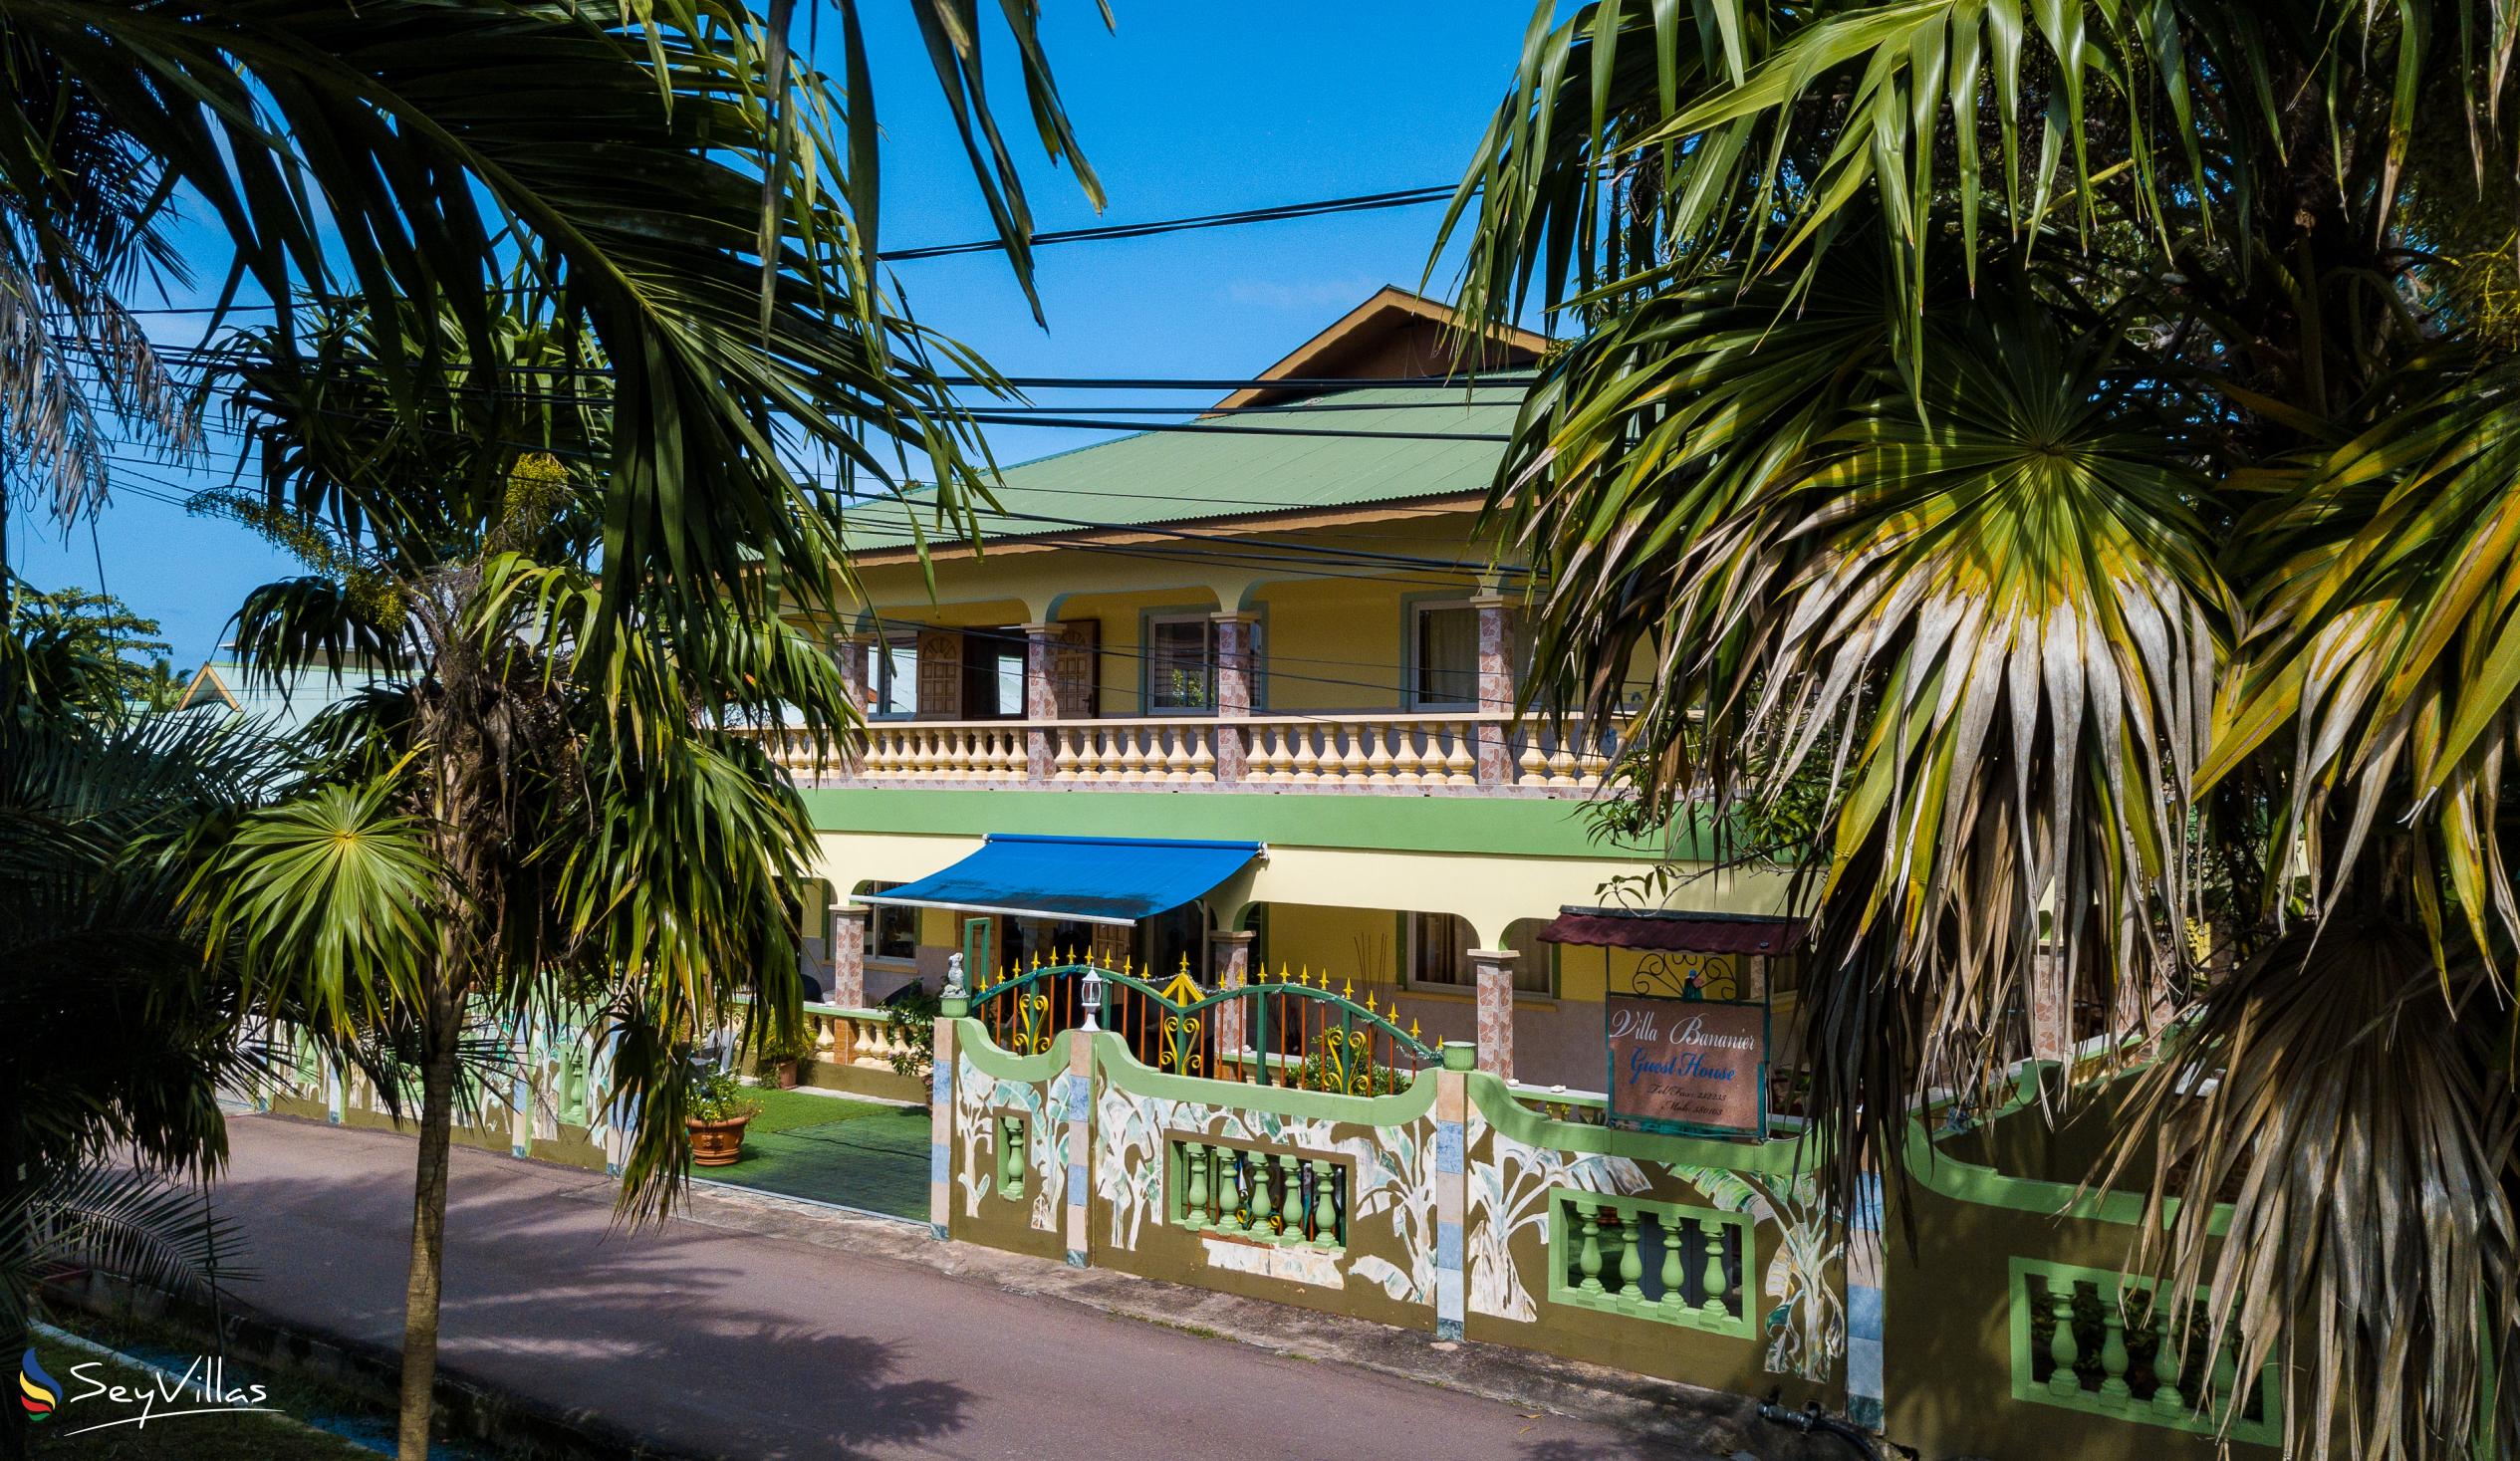 Foto 30: Villa Bananier - Aussenbereich - Praslin (Seychellen)